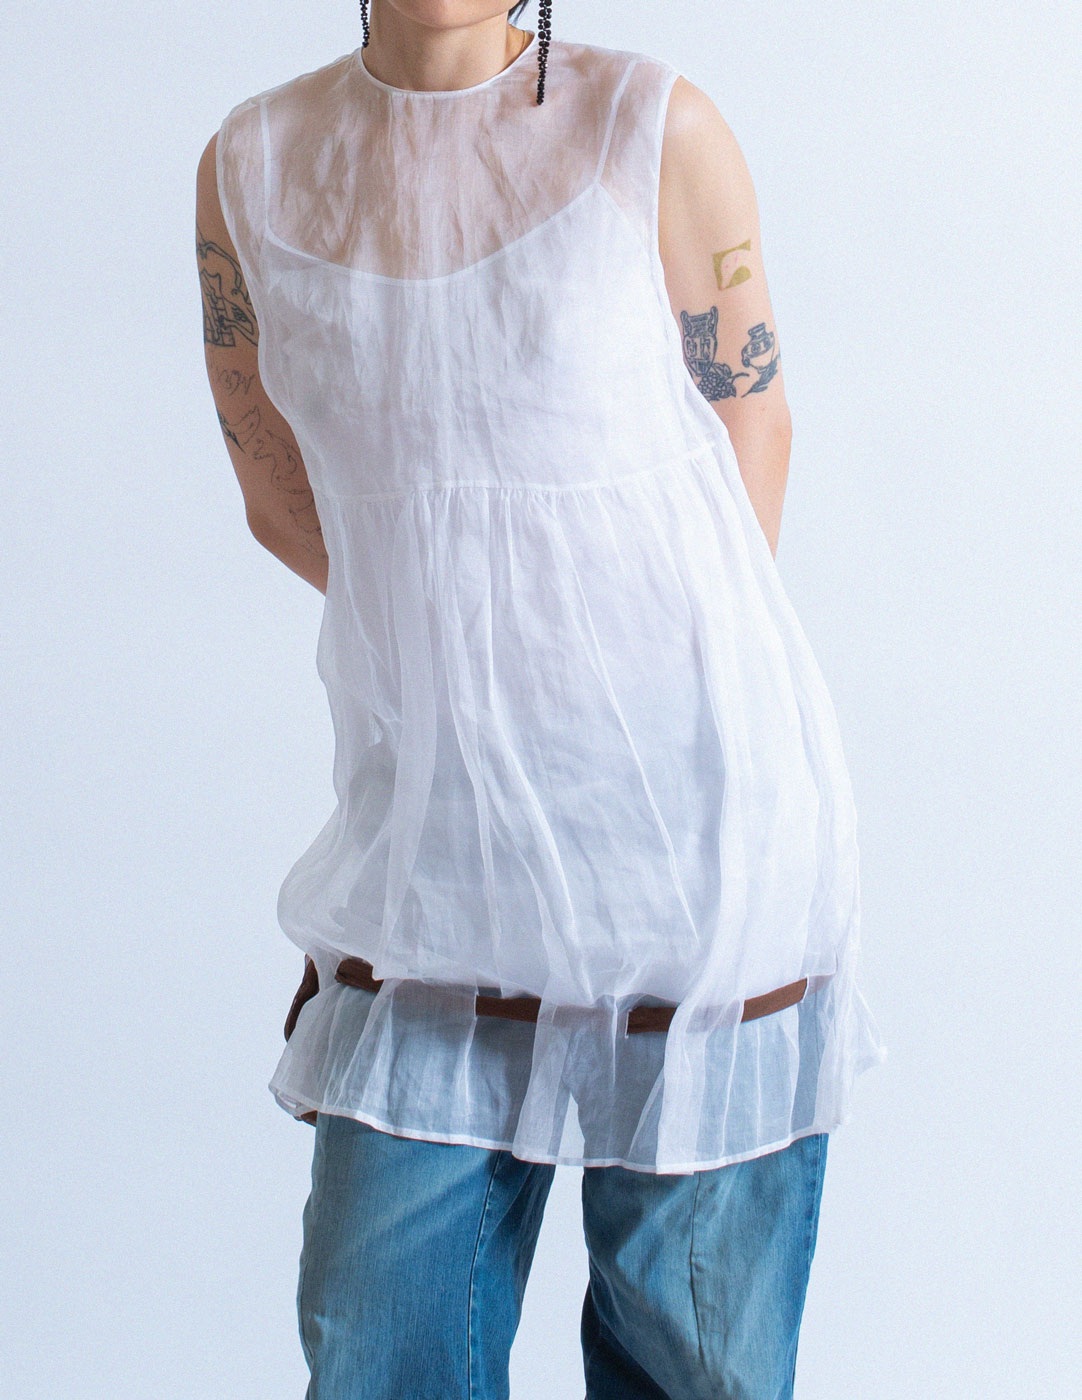 Miu Miu sheer layered cotton gauze dress detail